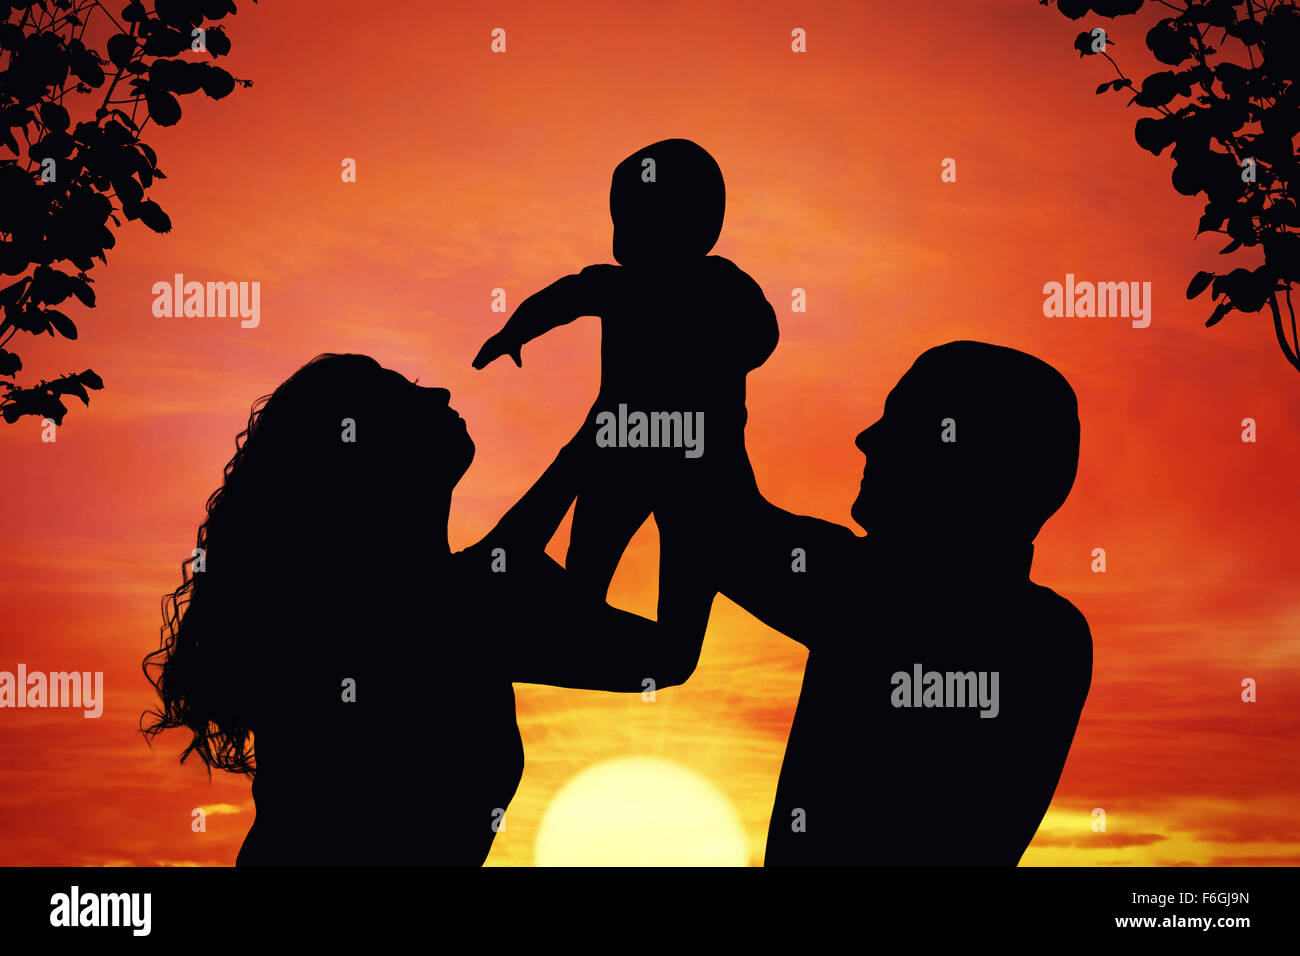 Eltern mit ihrem kleinen Kind bei Sonnenuntergang, Baby in die Luft hob. Silhouette einer glücklichen Familie von drei Personen Stockfoto